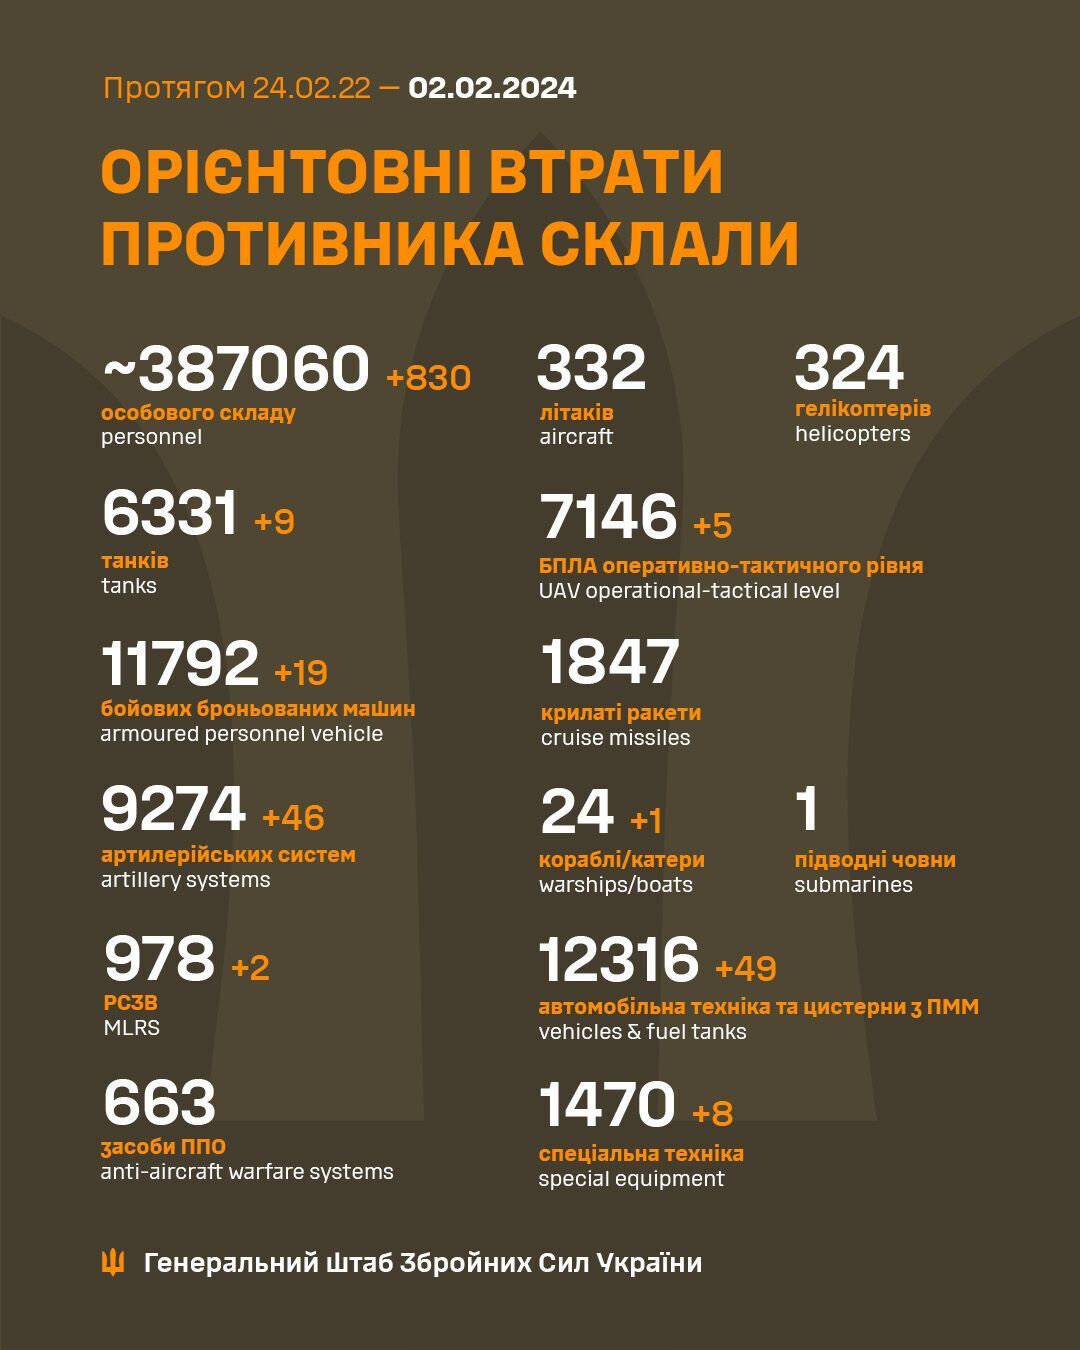 Мінус 830 загарбників, 46 артсистем і катер: Генштаб озвучив свіжі дані про втрати РФ